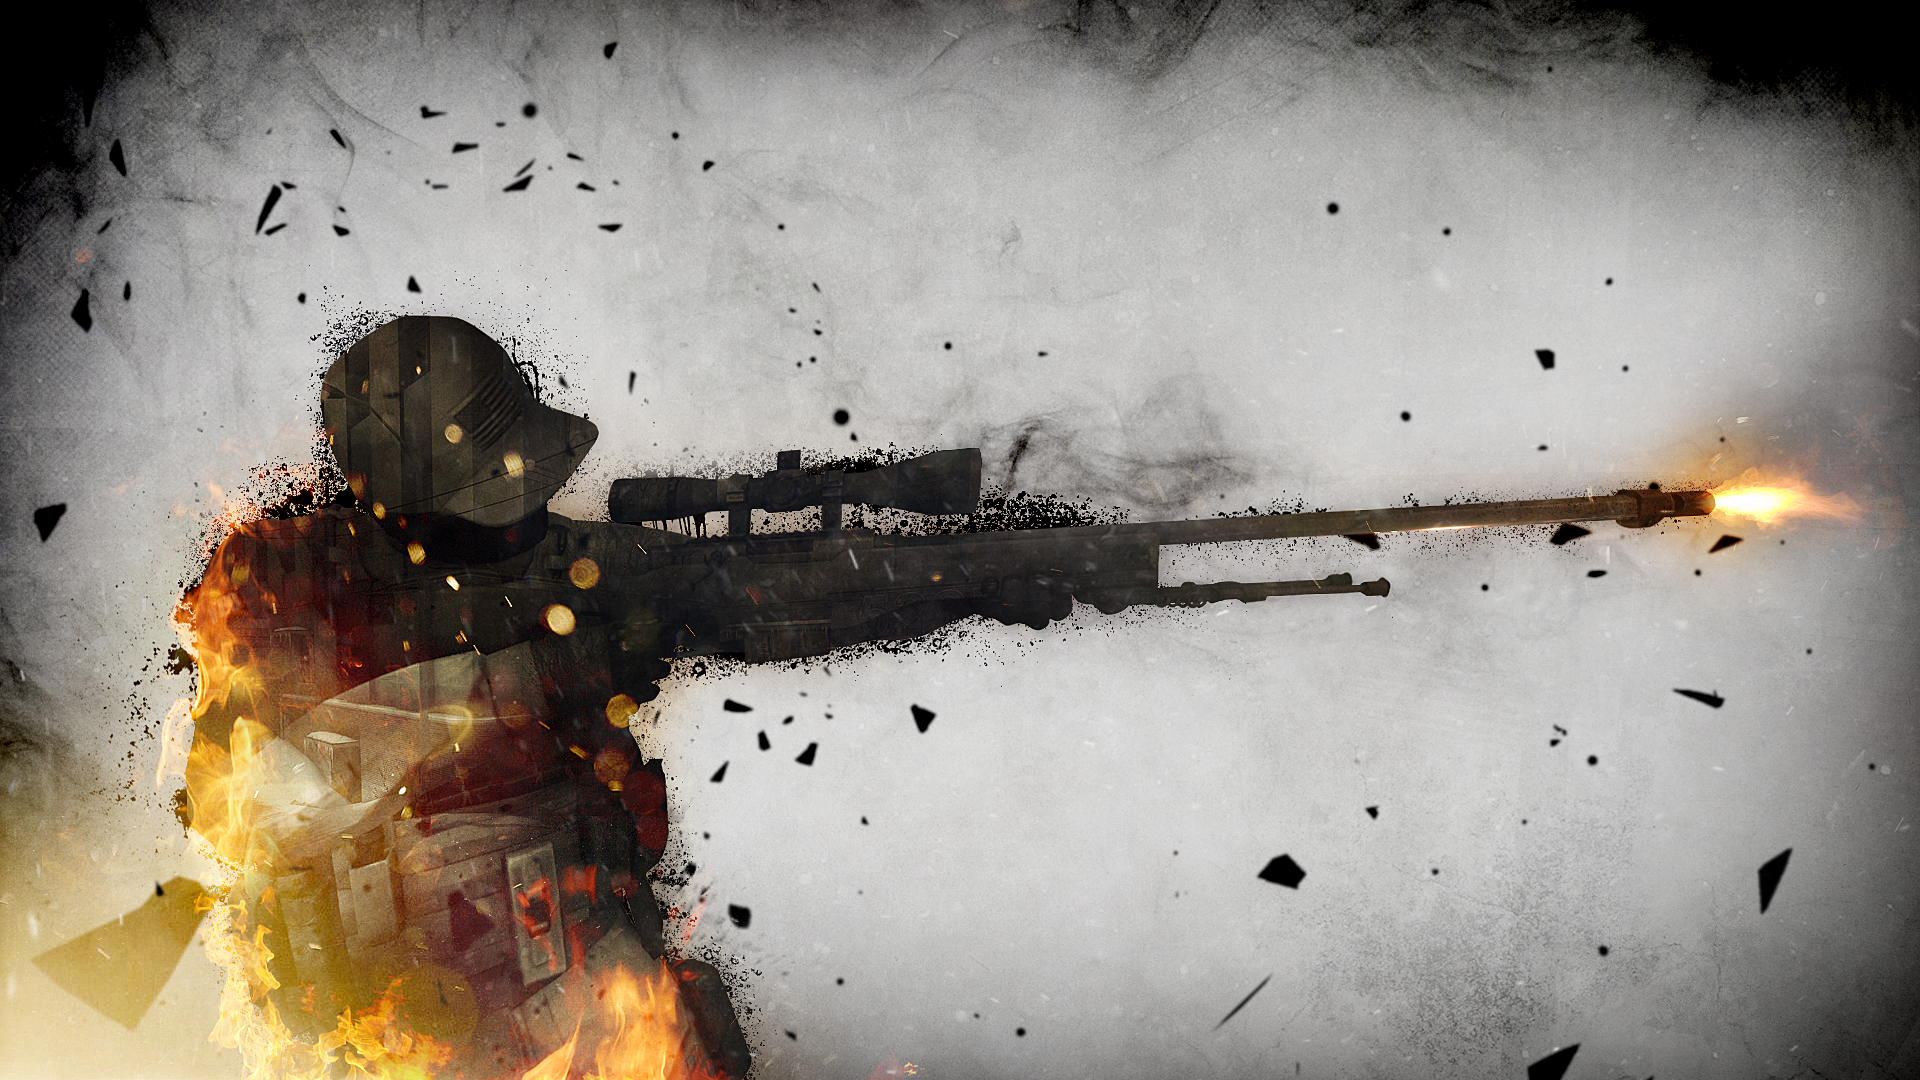 Counter-Strike: Global Offensive Wallpaper – Coliseu Geek